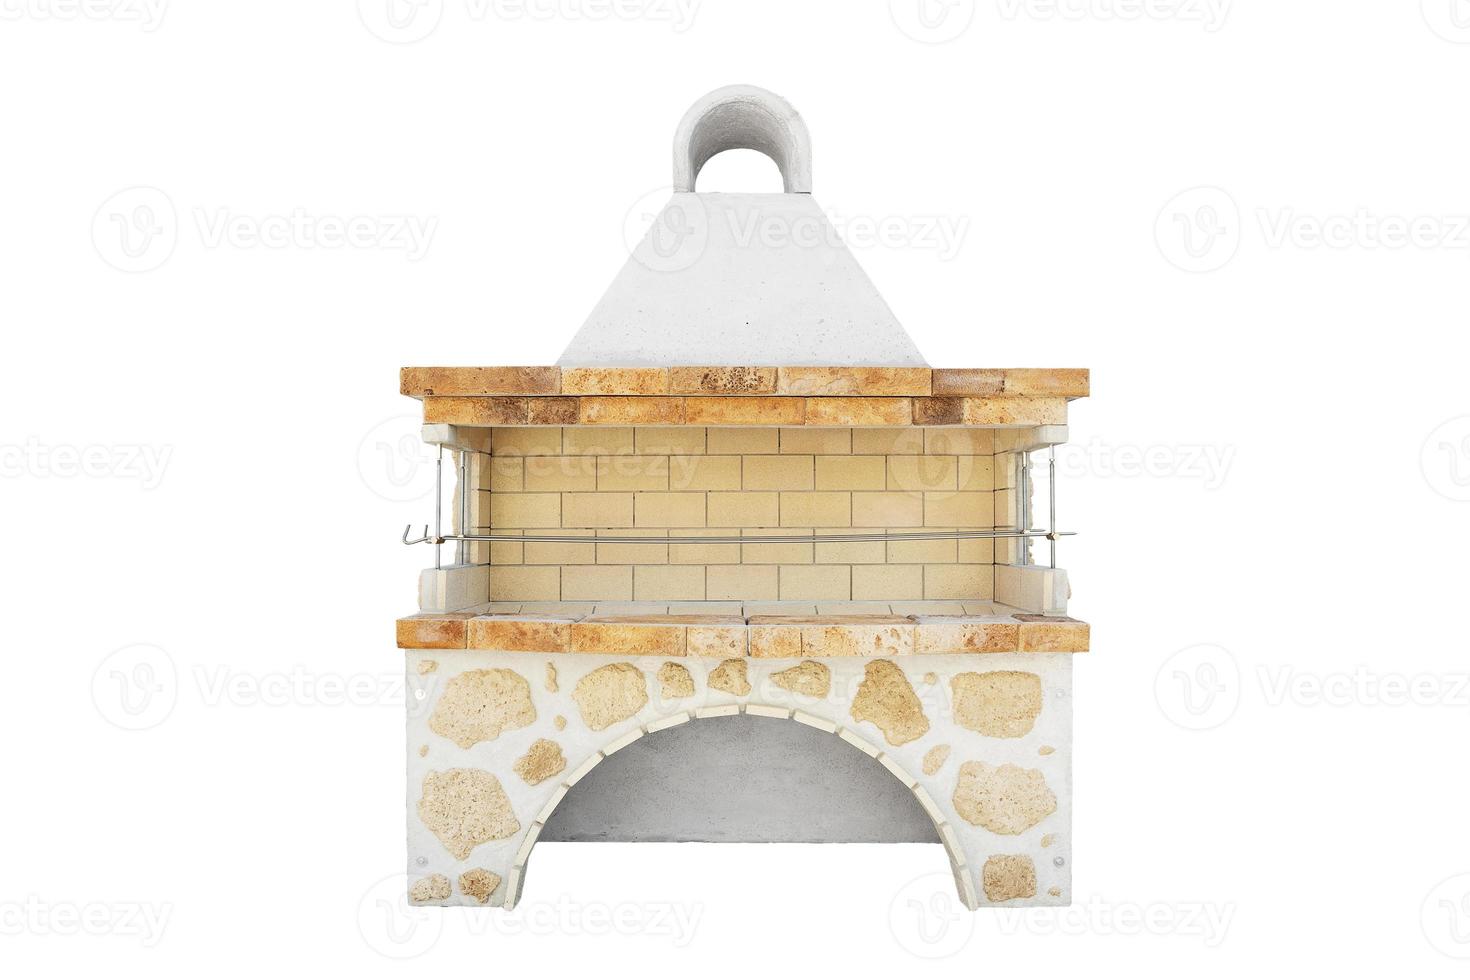 grand barbecue cheminée ouverte pour les repas de cuisson. barbecue extérieur. cuisine d'été ouverte. barbecue en briques sur la cour arrière. isolé sur fond blanc. photo